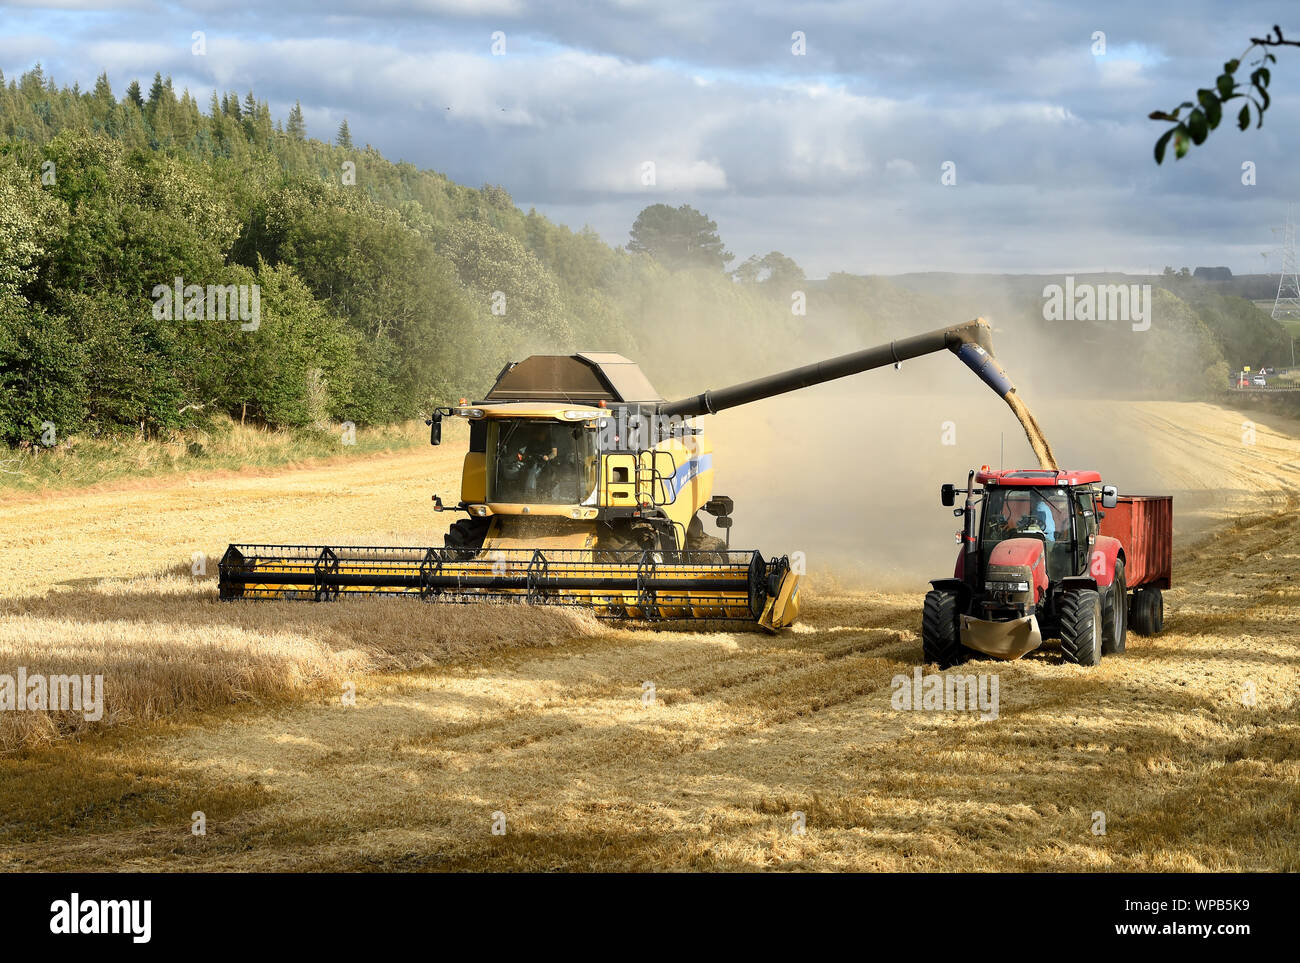 New Holland mietitrebbia lavorando in un campo vicino a Pathhead, Midlothian, Scozia. Foto Stock